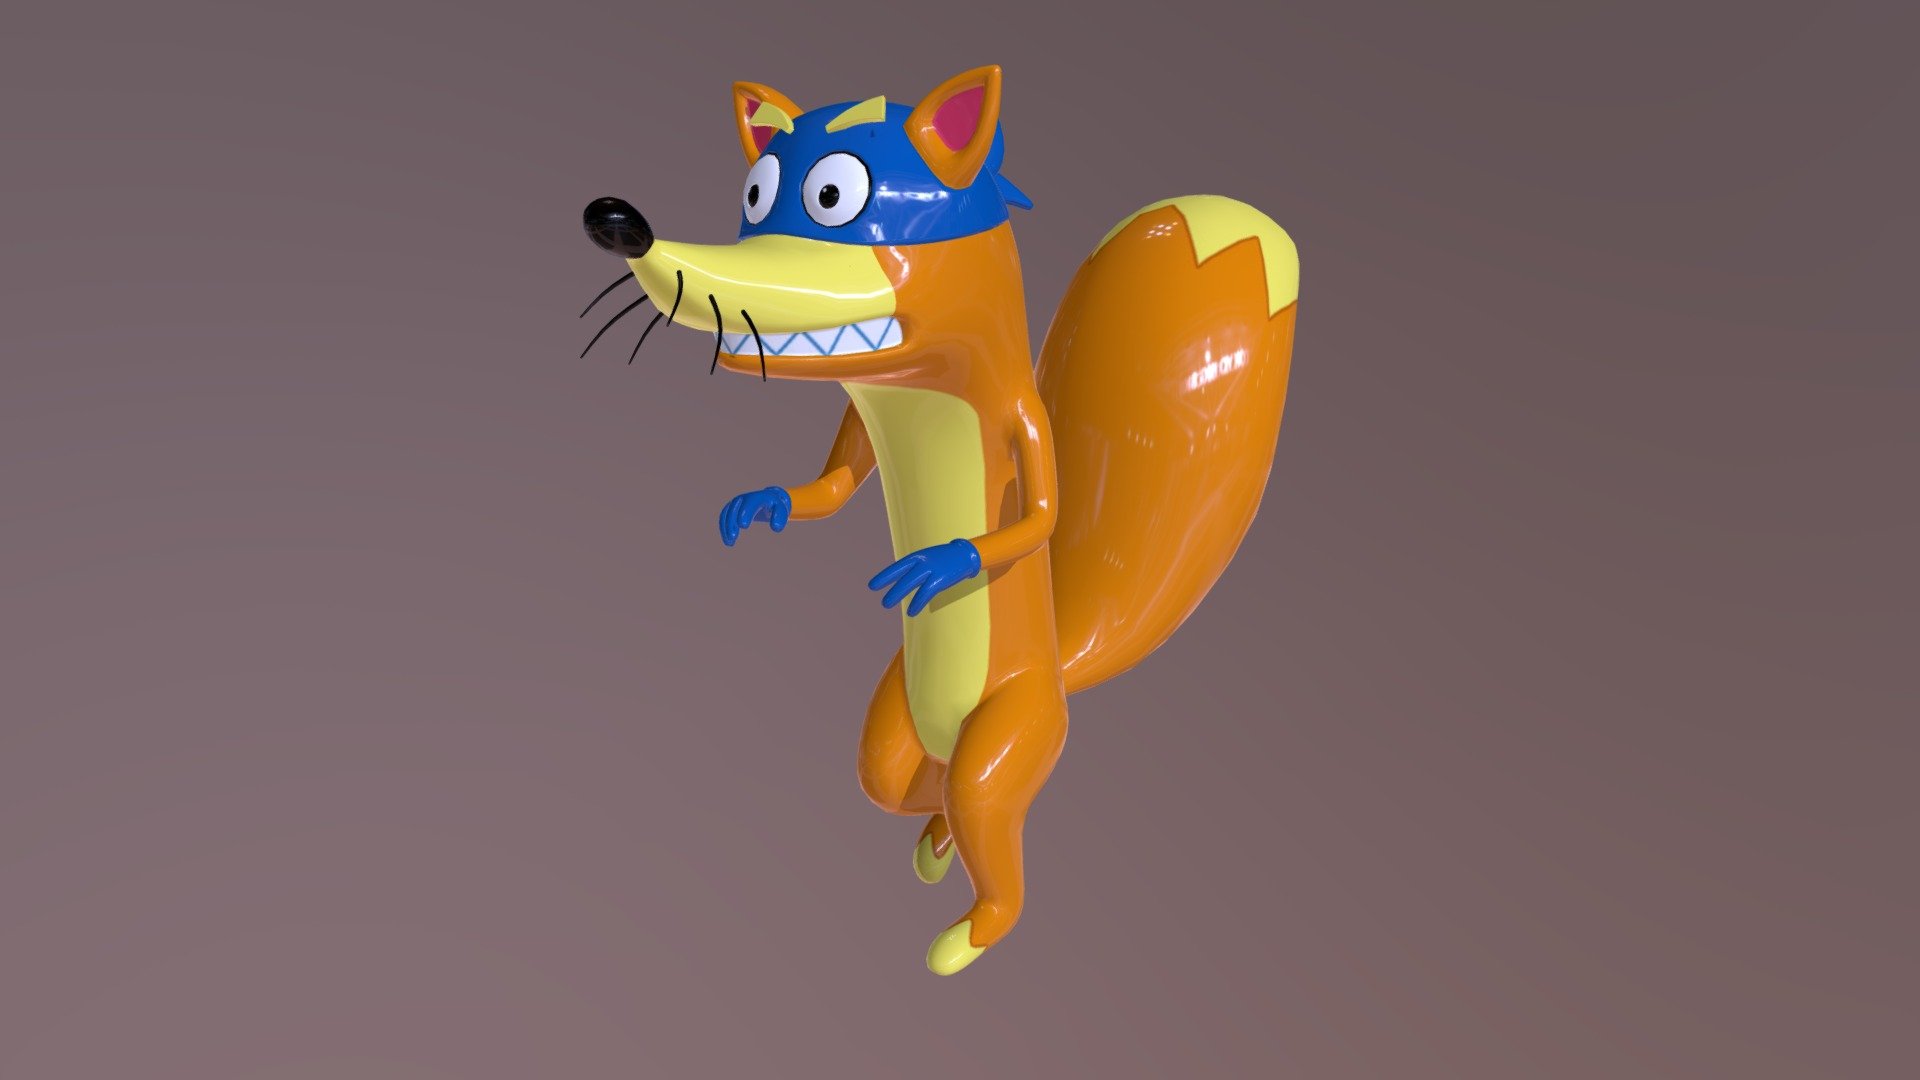 - Swiper the Fox - Buy Royalty Free 3D model by Deleon3d.